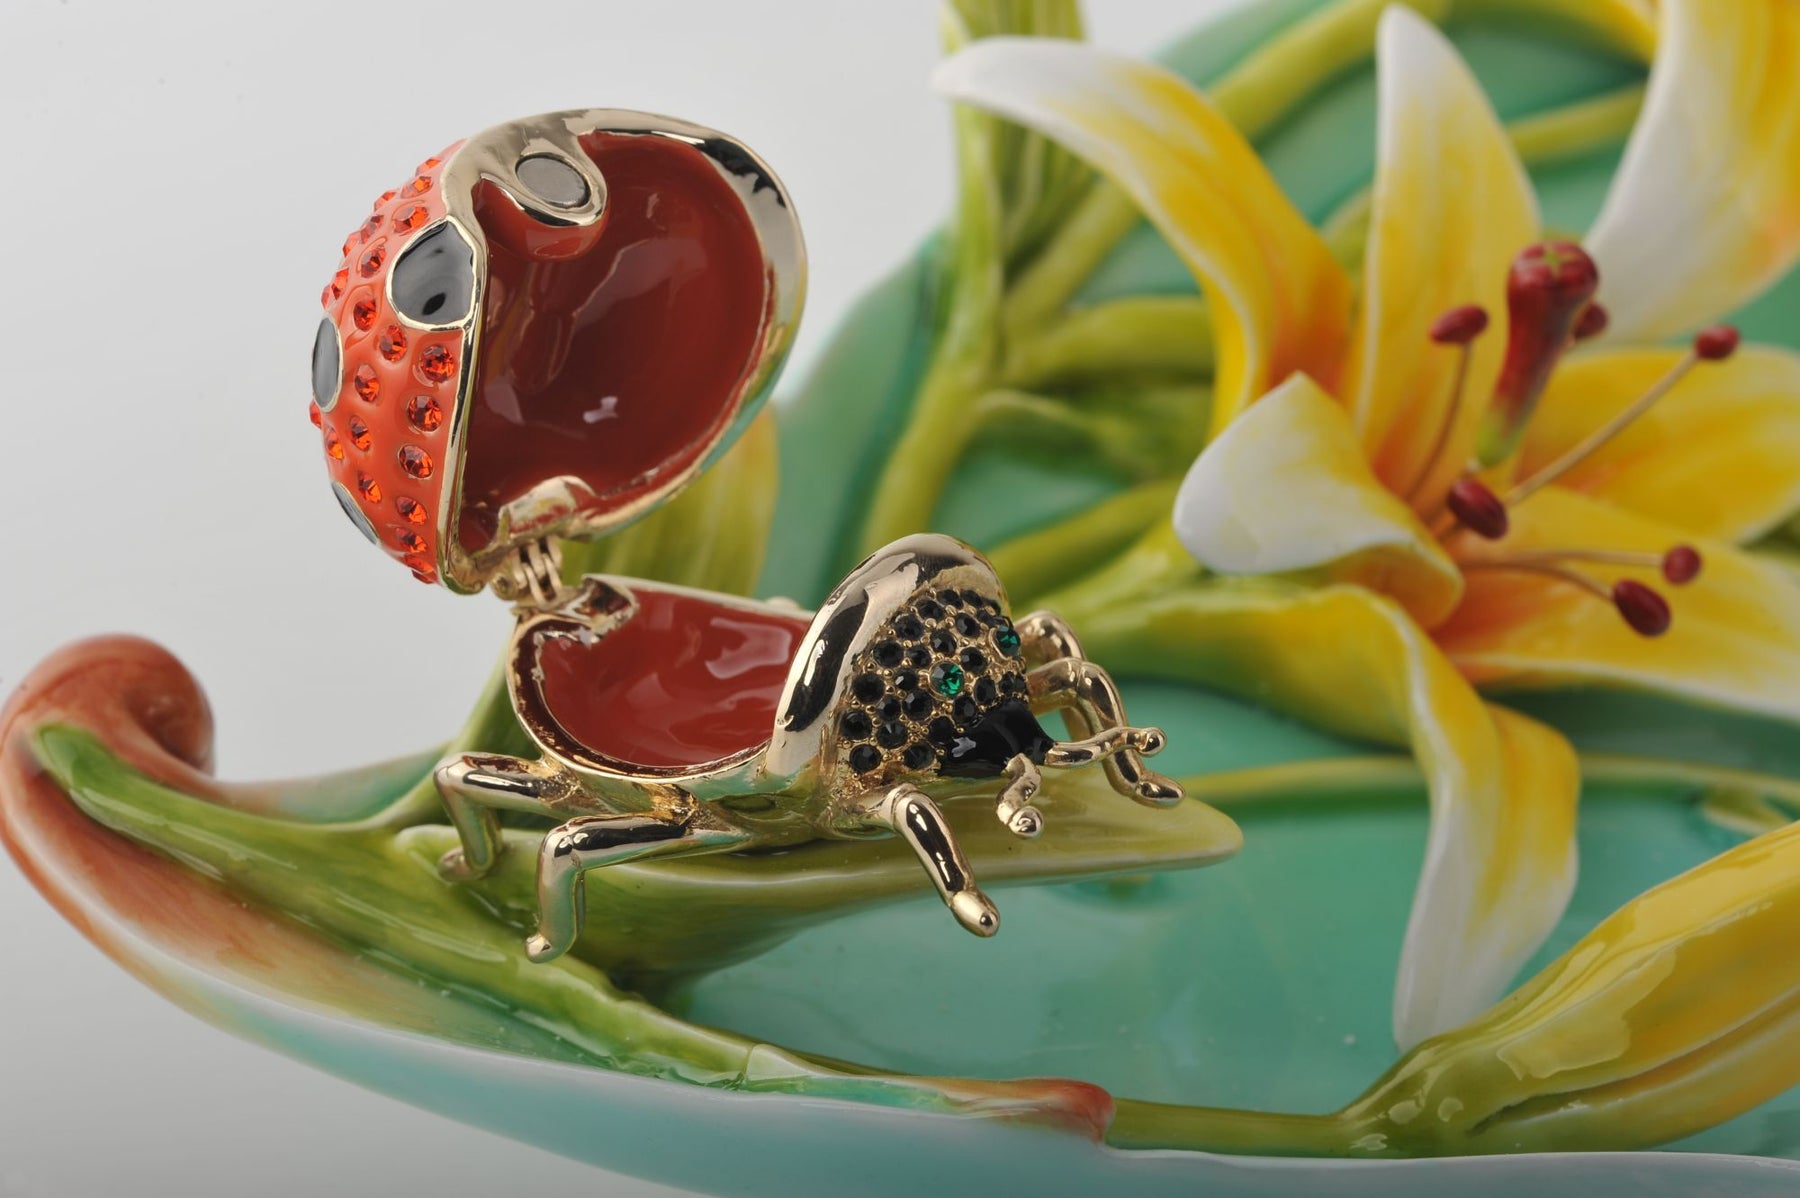 Trinket Plate with Ladybug